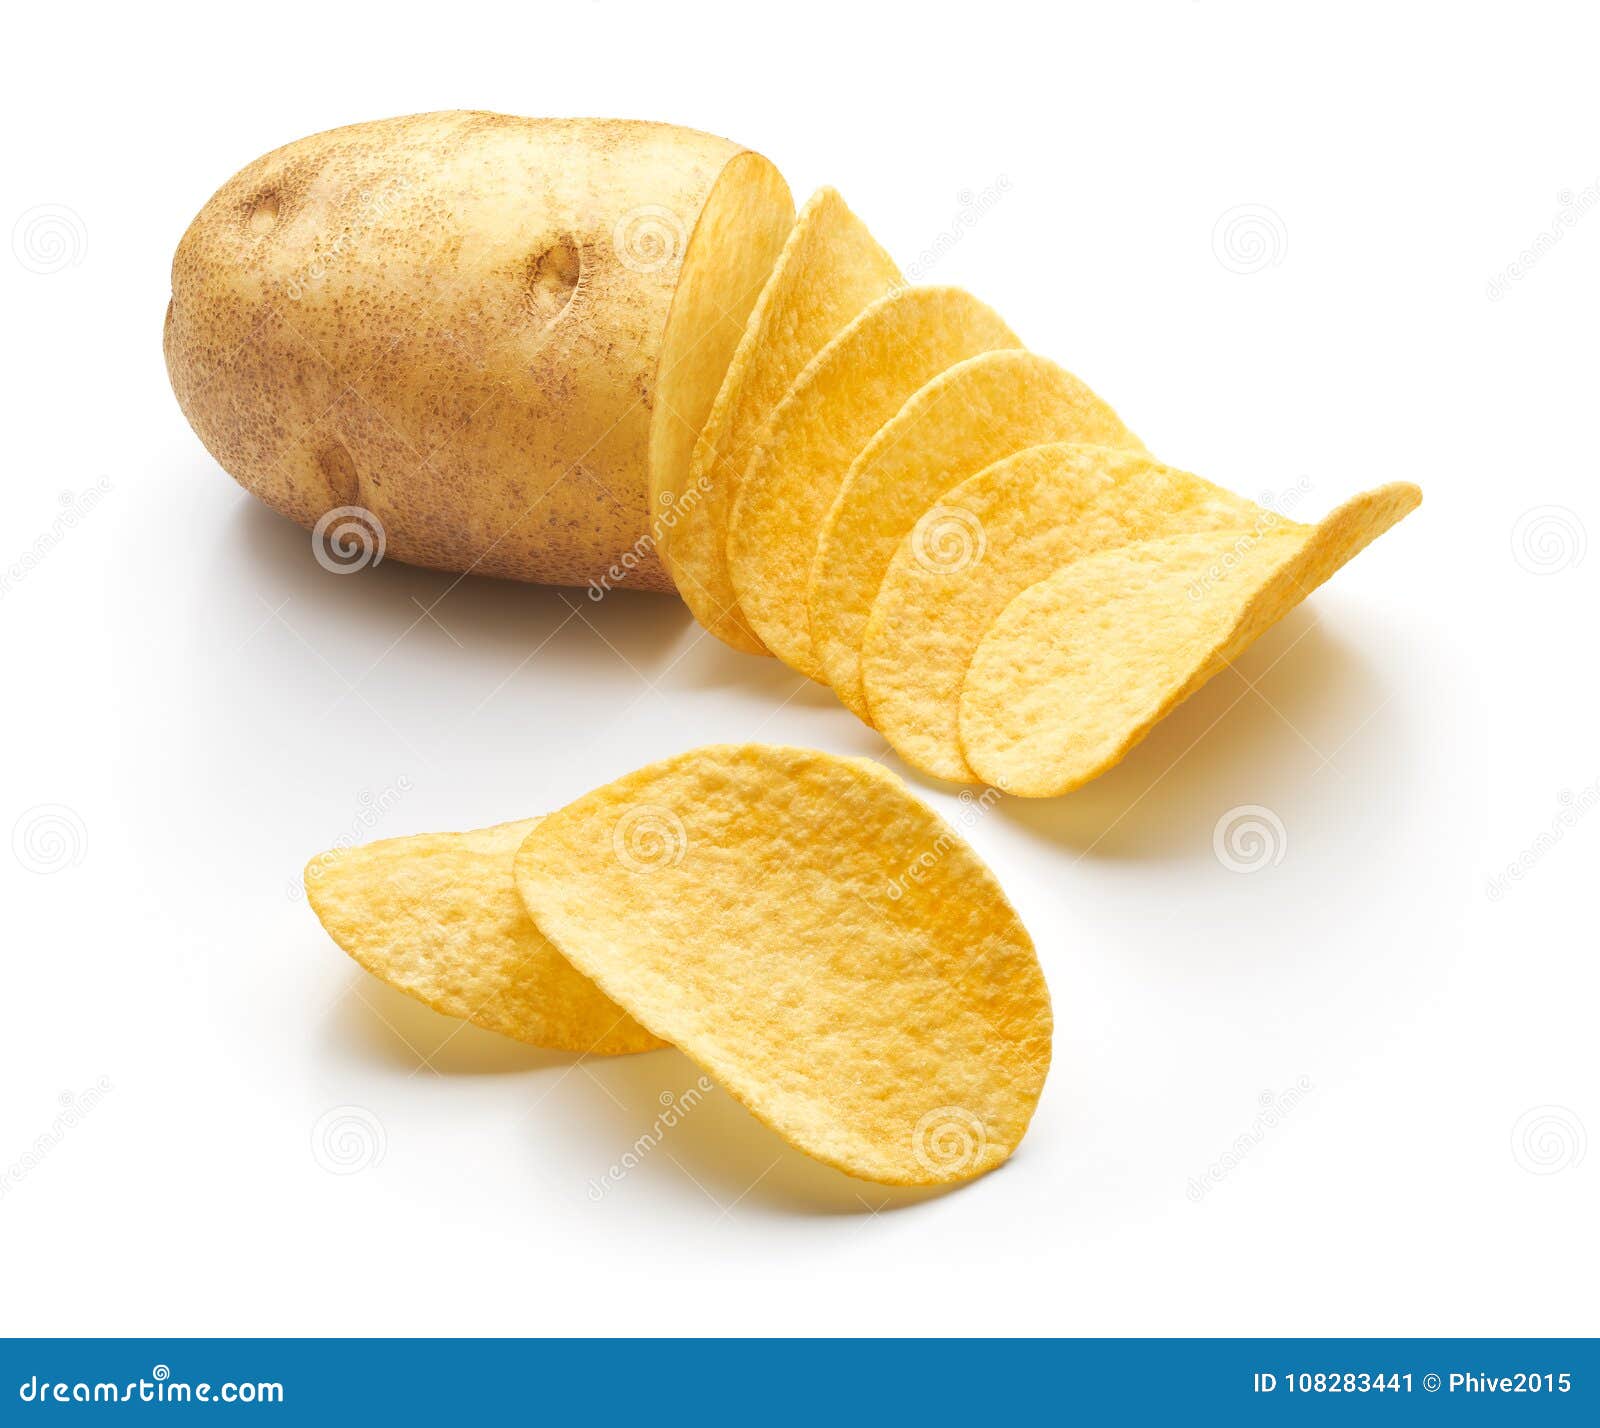 👏👏👏 Trancheuse de Chips de plantains, pommes de terre